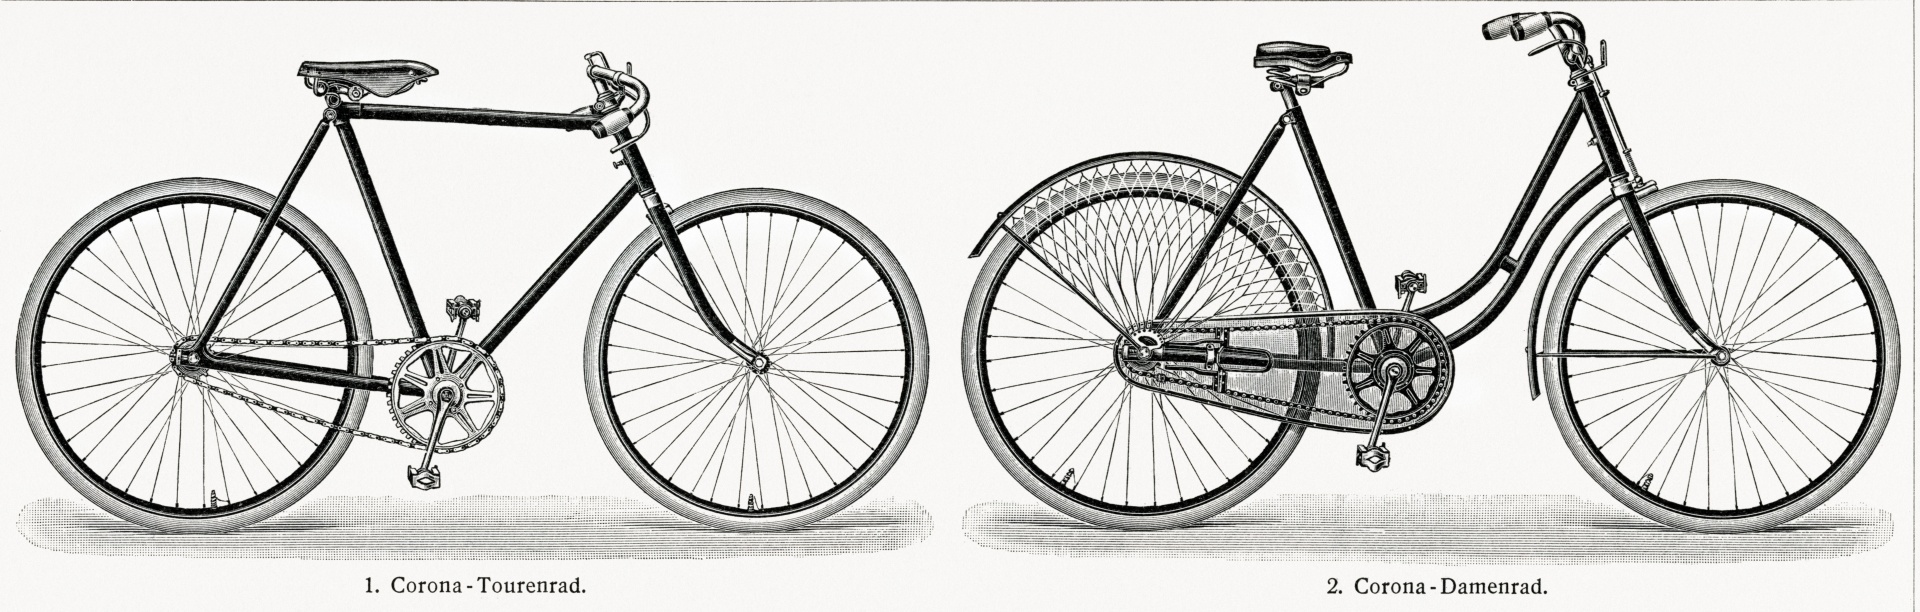 Bicycle Wheels Vintage Art